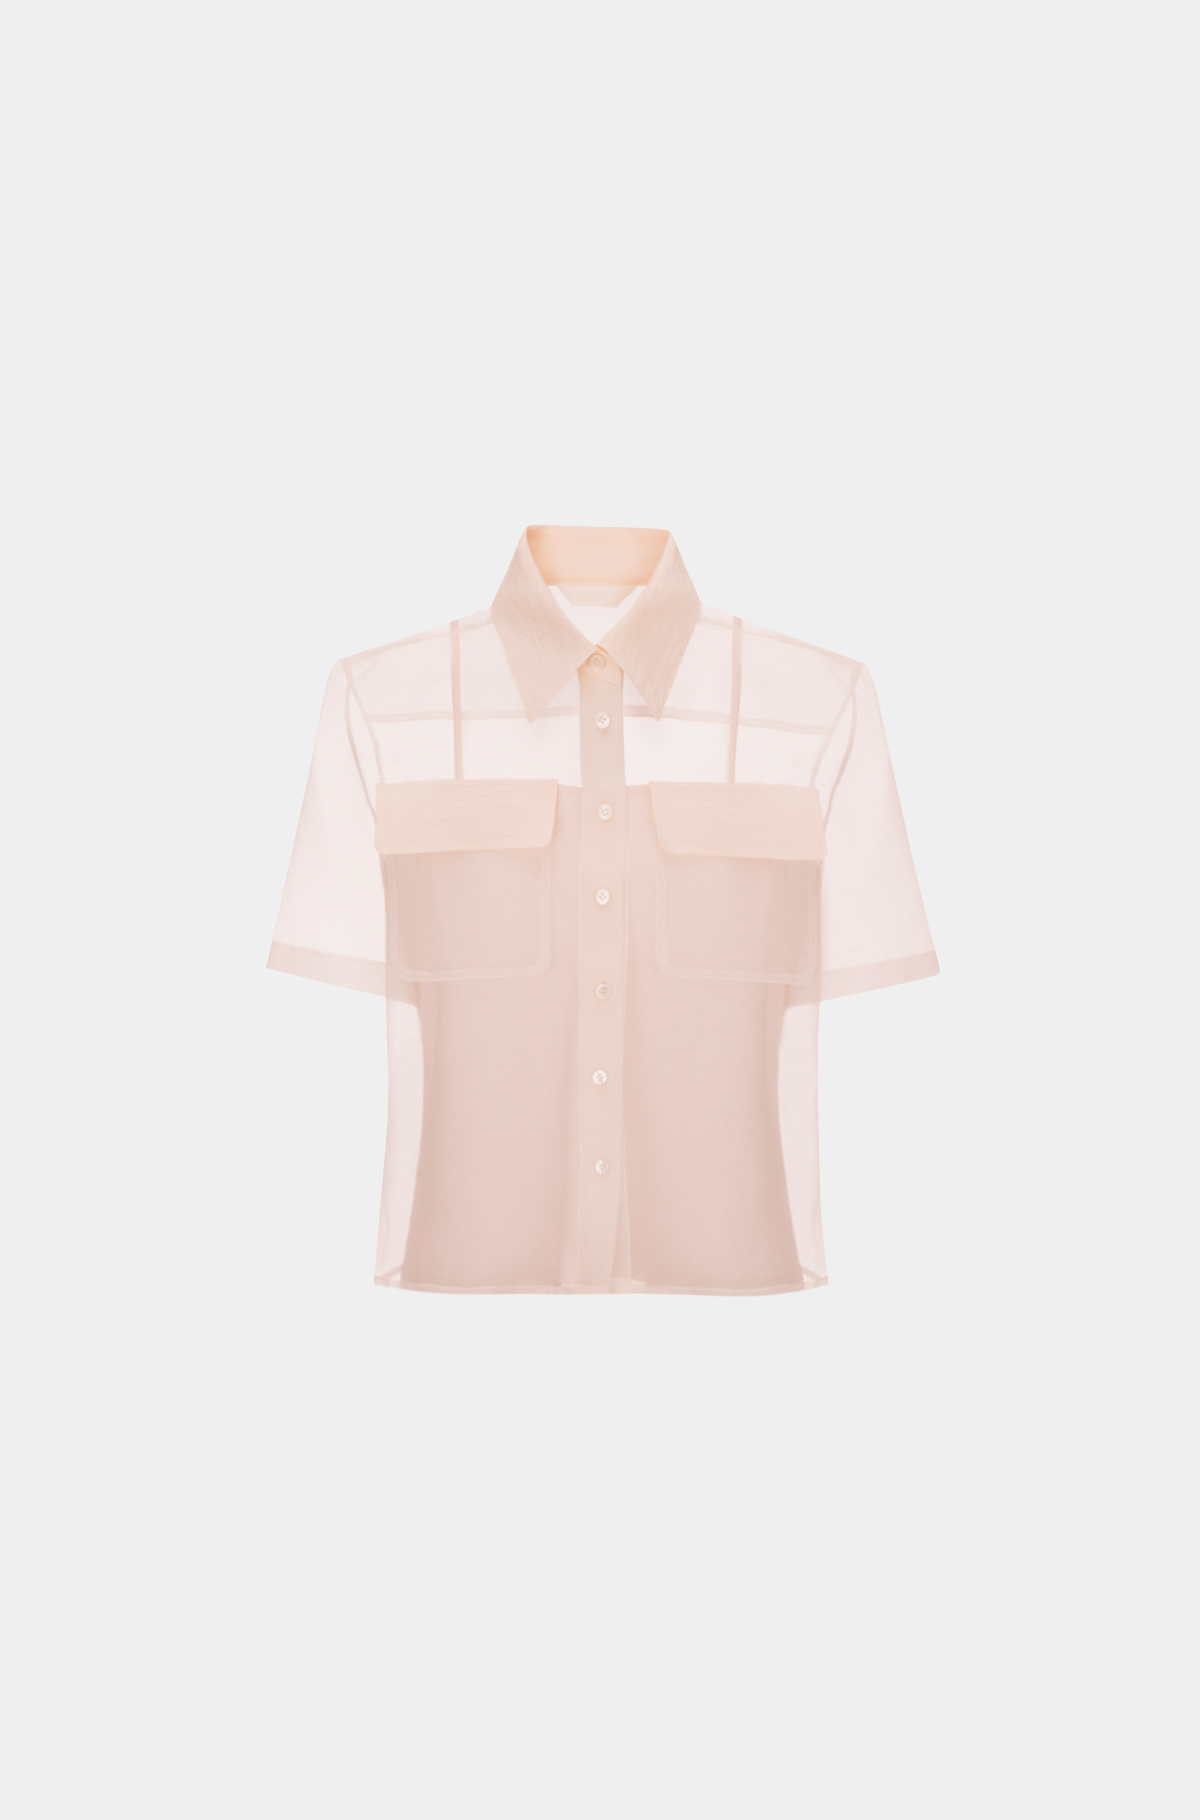 오간자 플랩 포켓 셔츠 - 샴페인 핑크